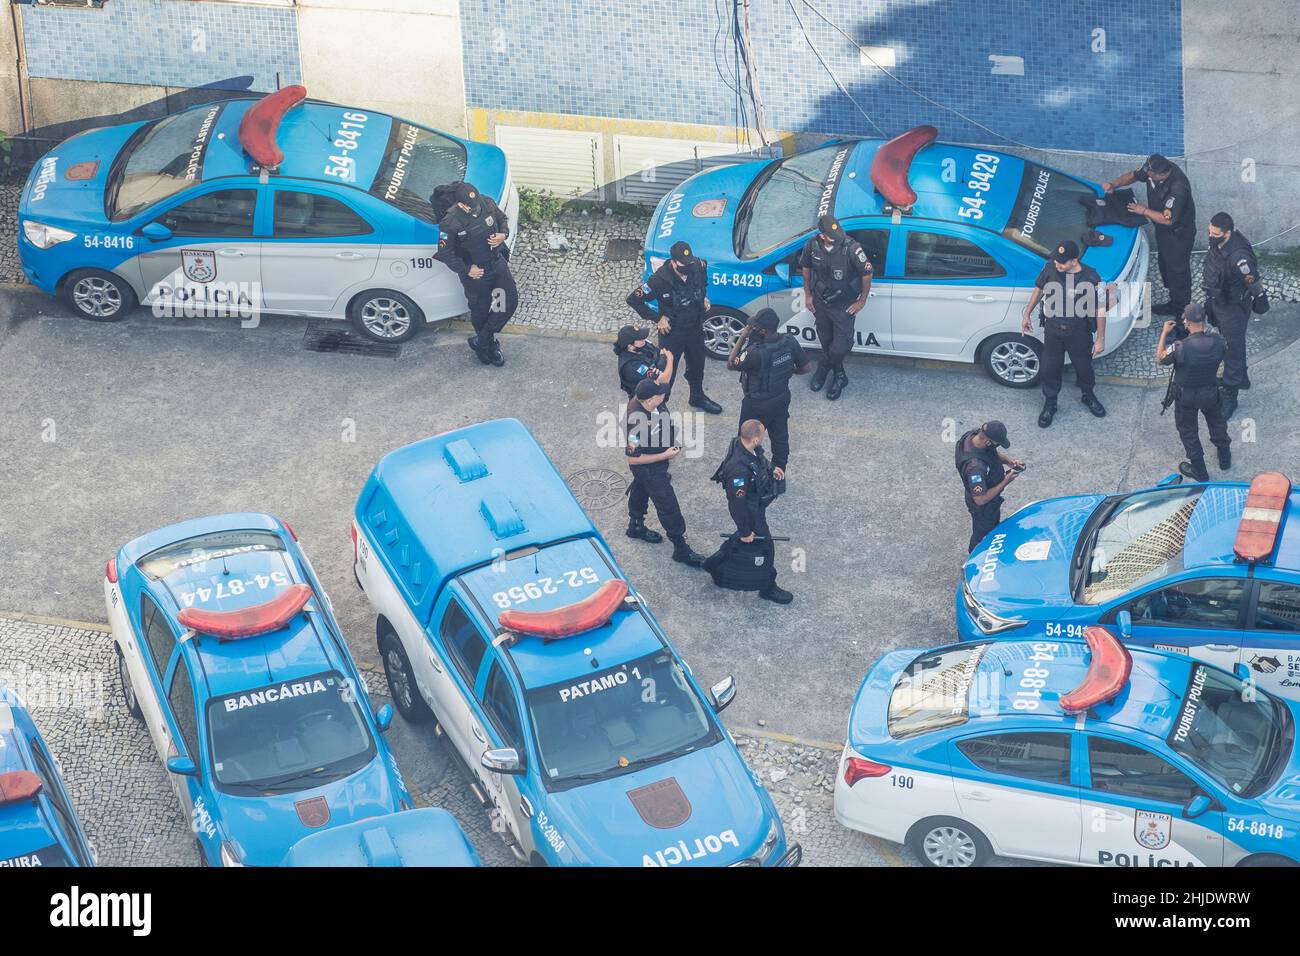 Vista elevada de los vehículos y oficinas de PM (Policia Militar), Río de Janeiro, Brasil Foto de stock